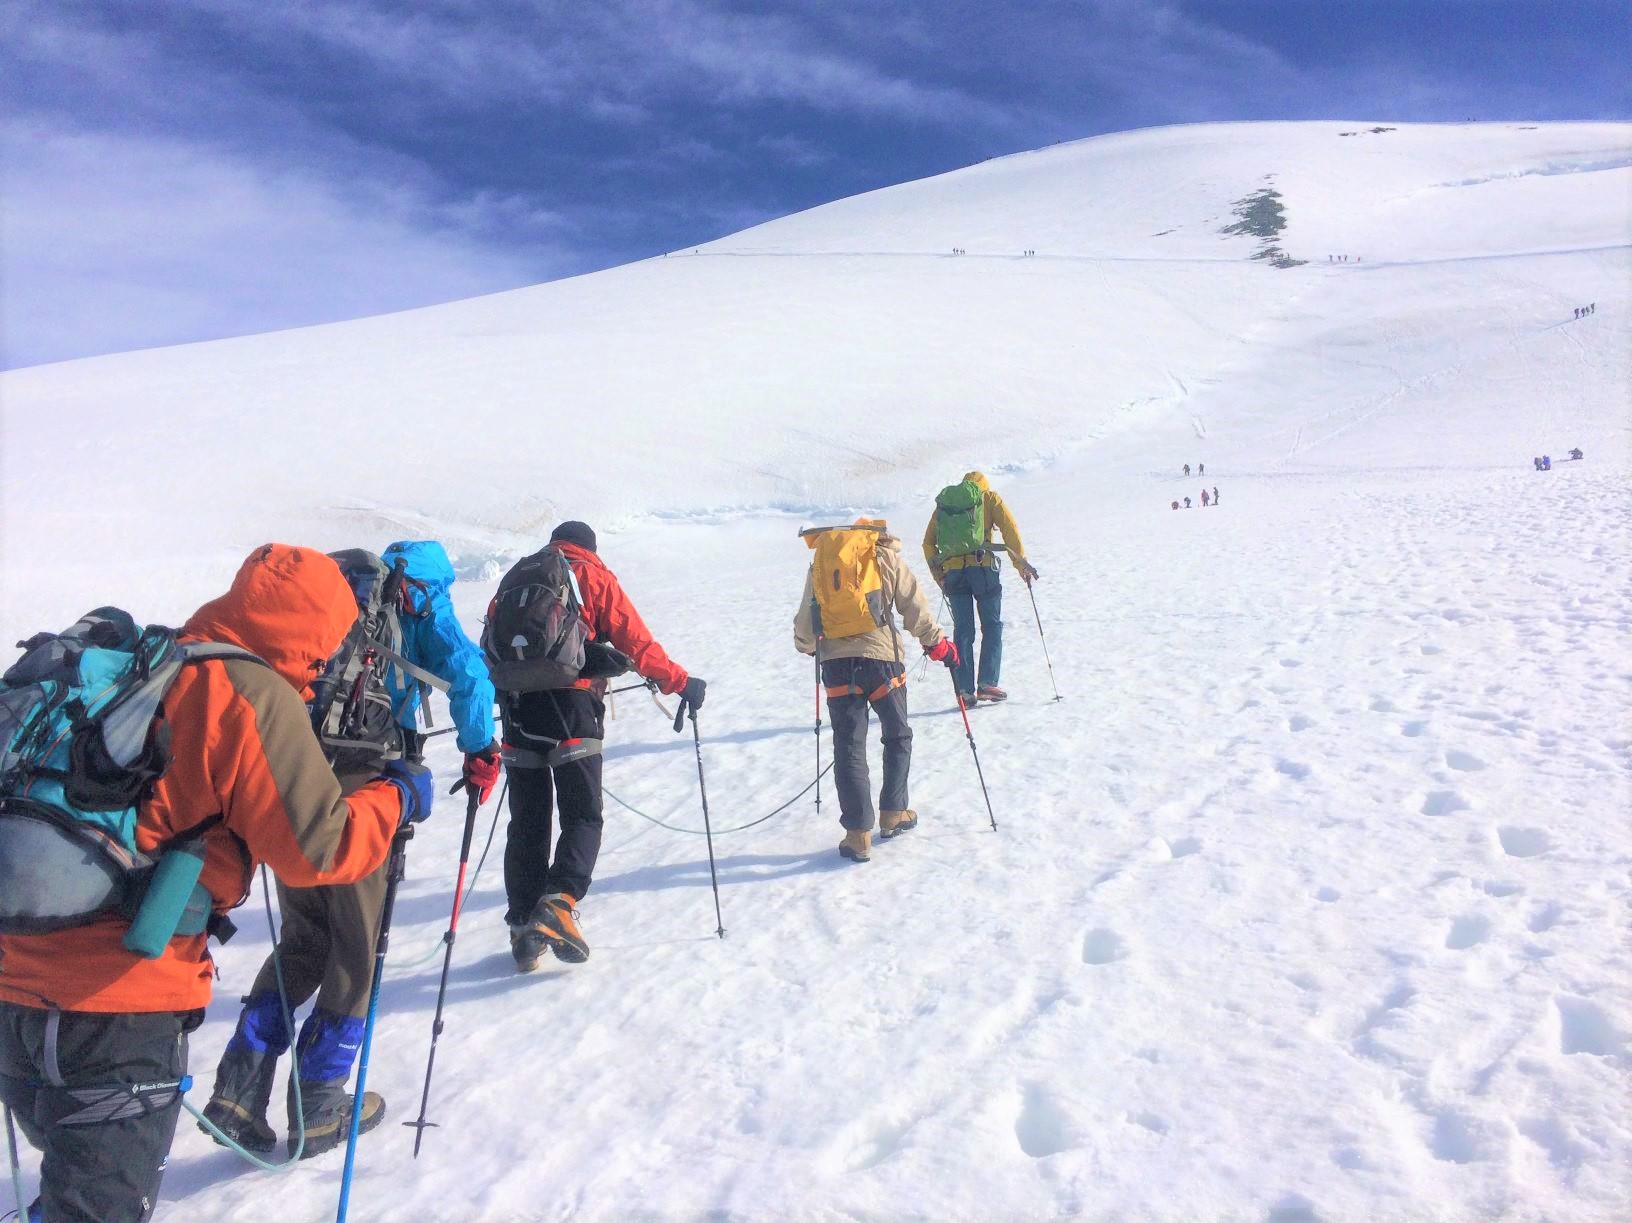 スイスの4,000m峰ブライトホルン登頂と<br>マッターホルン展望ハイキング  8日間